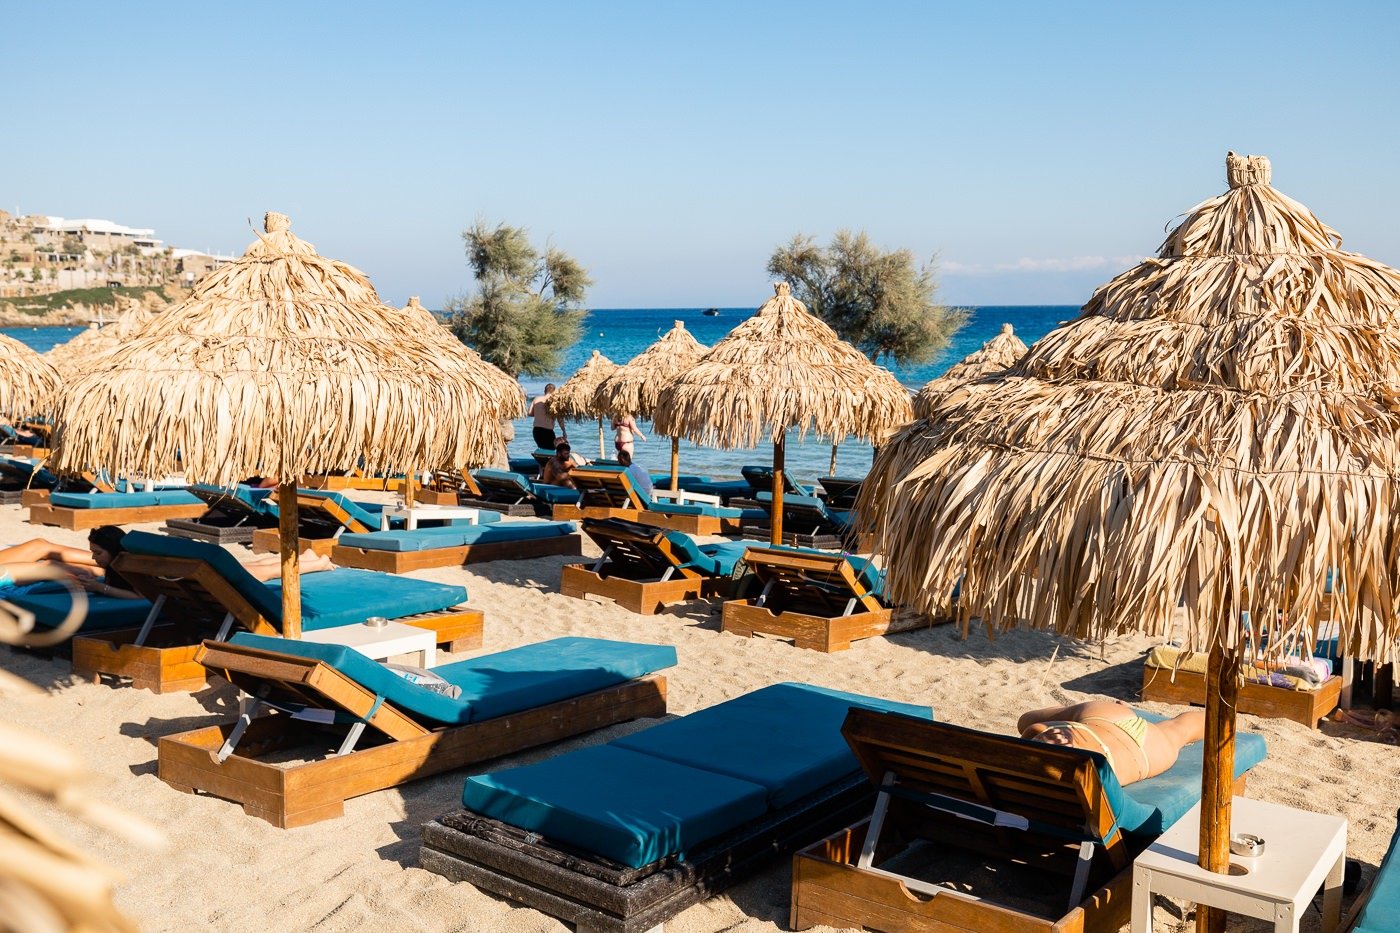 Beach at Luxury Hotel in Mykonos, Greece